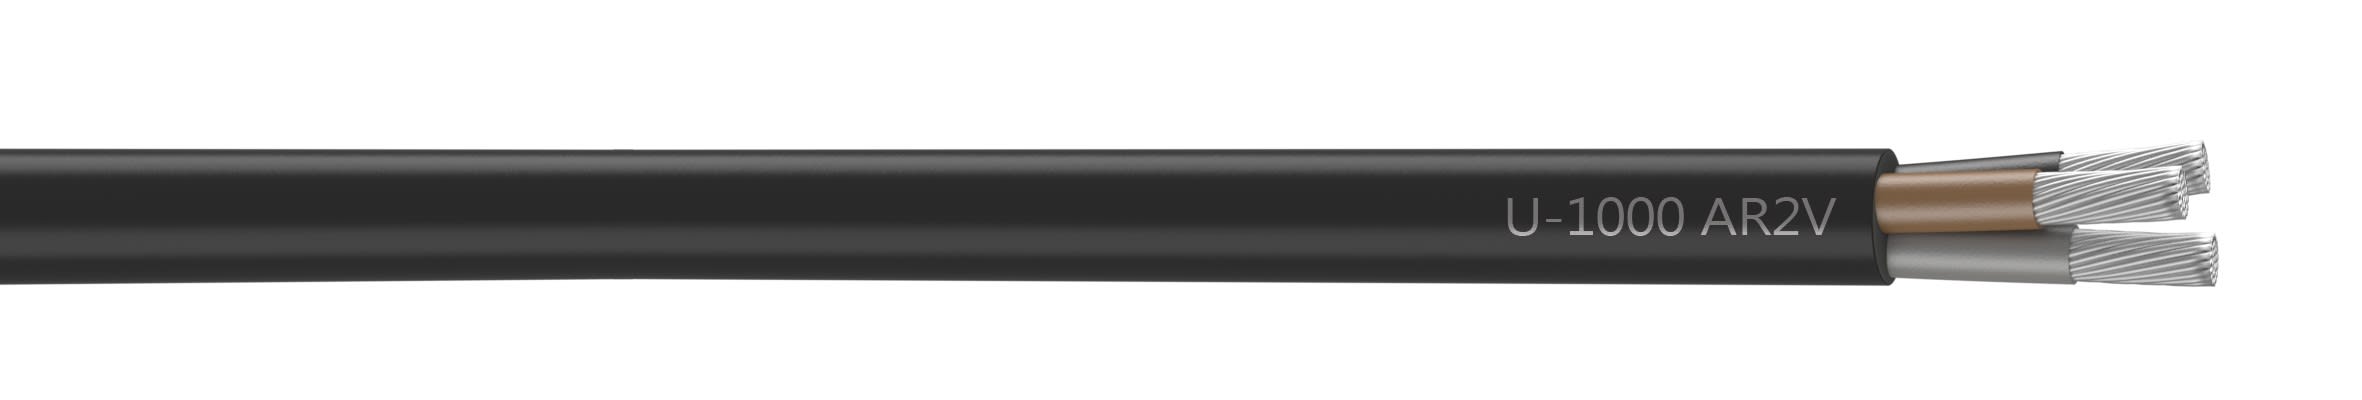 Nexans - Câble rigide U-1000 AR2V aluminium 3x50 longueur à la coupe